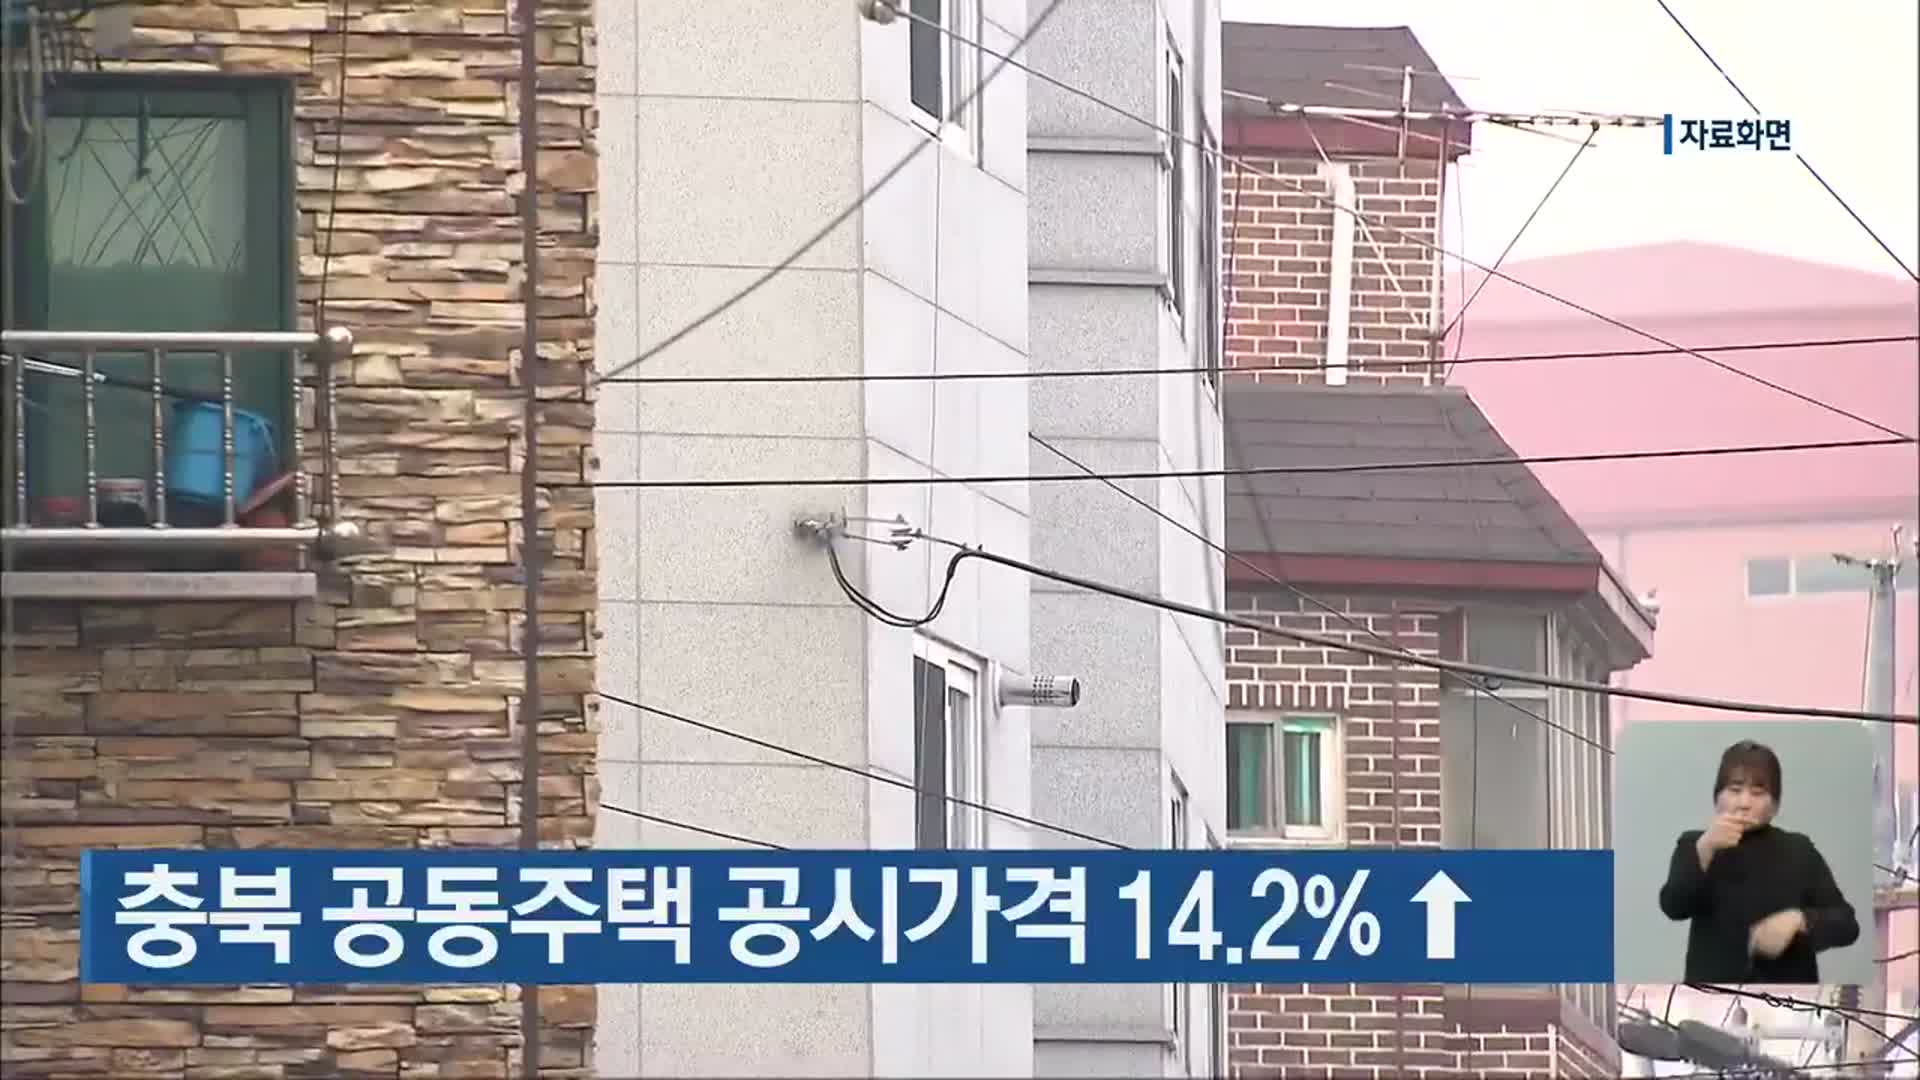 충북 공동주택 공시가격 14.2%↑